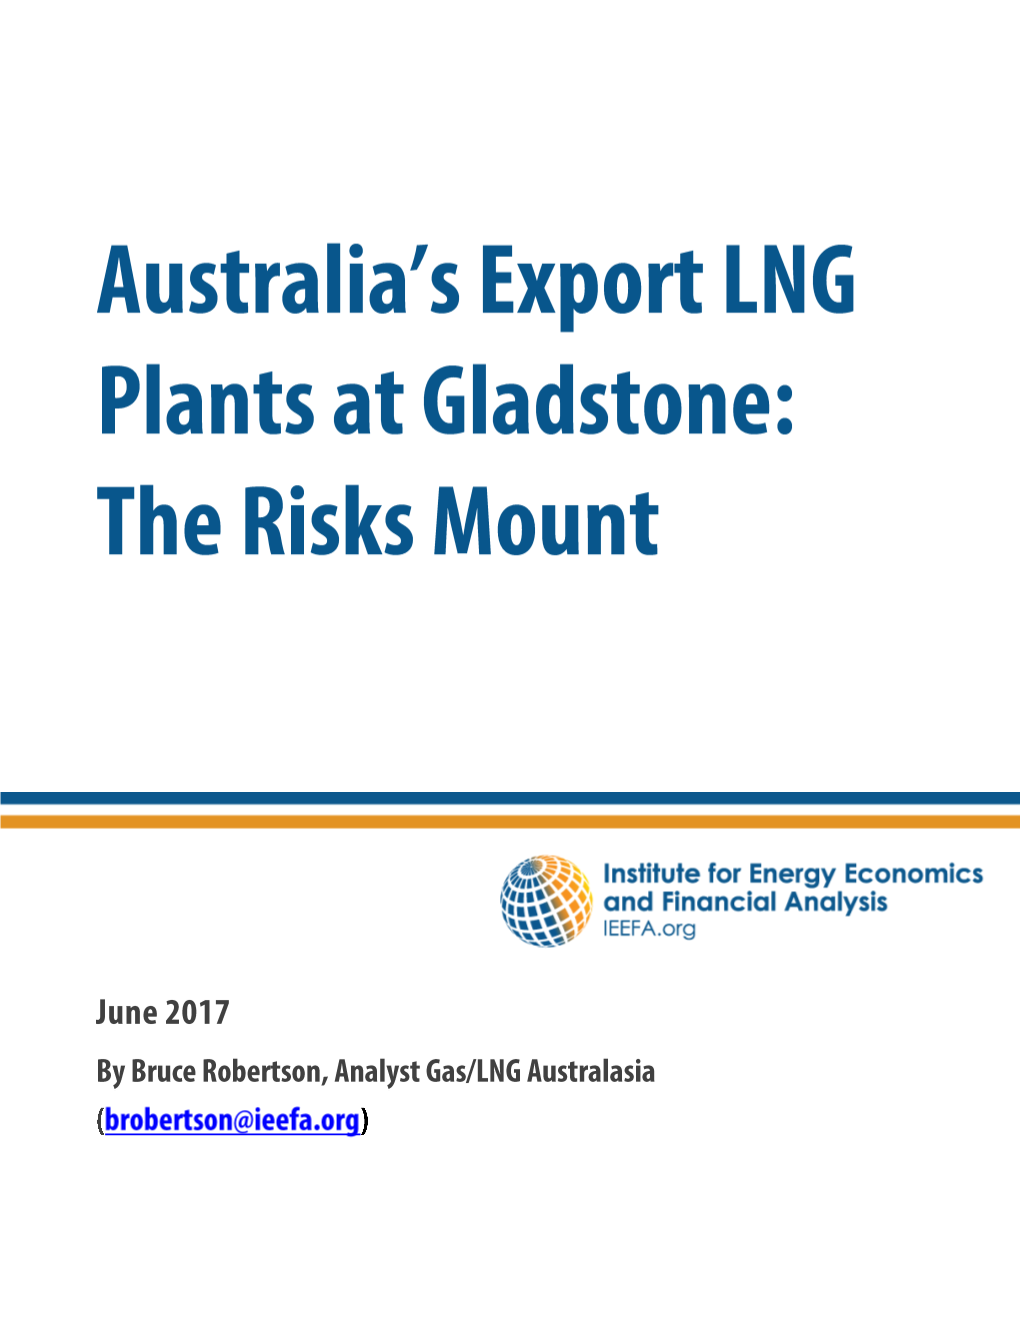 Australia's Export LNG Plants at Gladstone